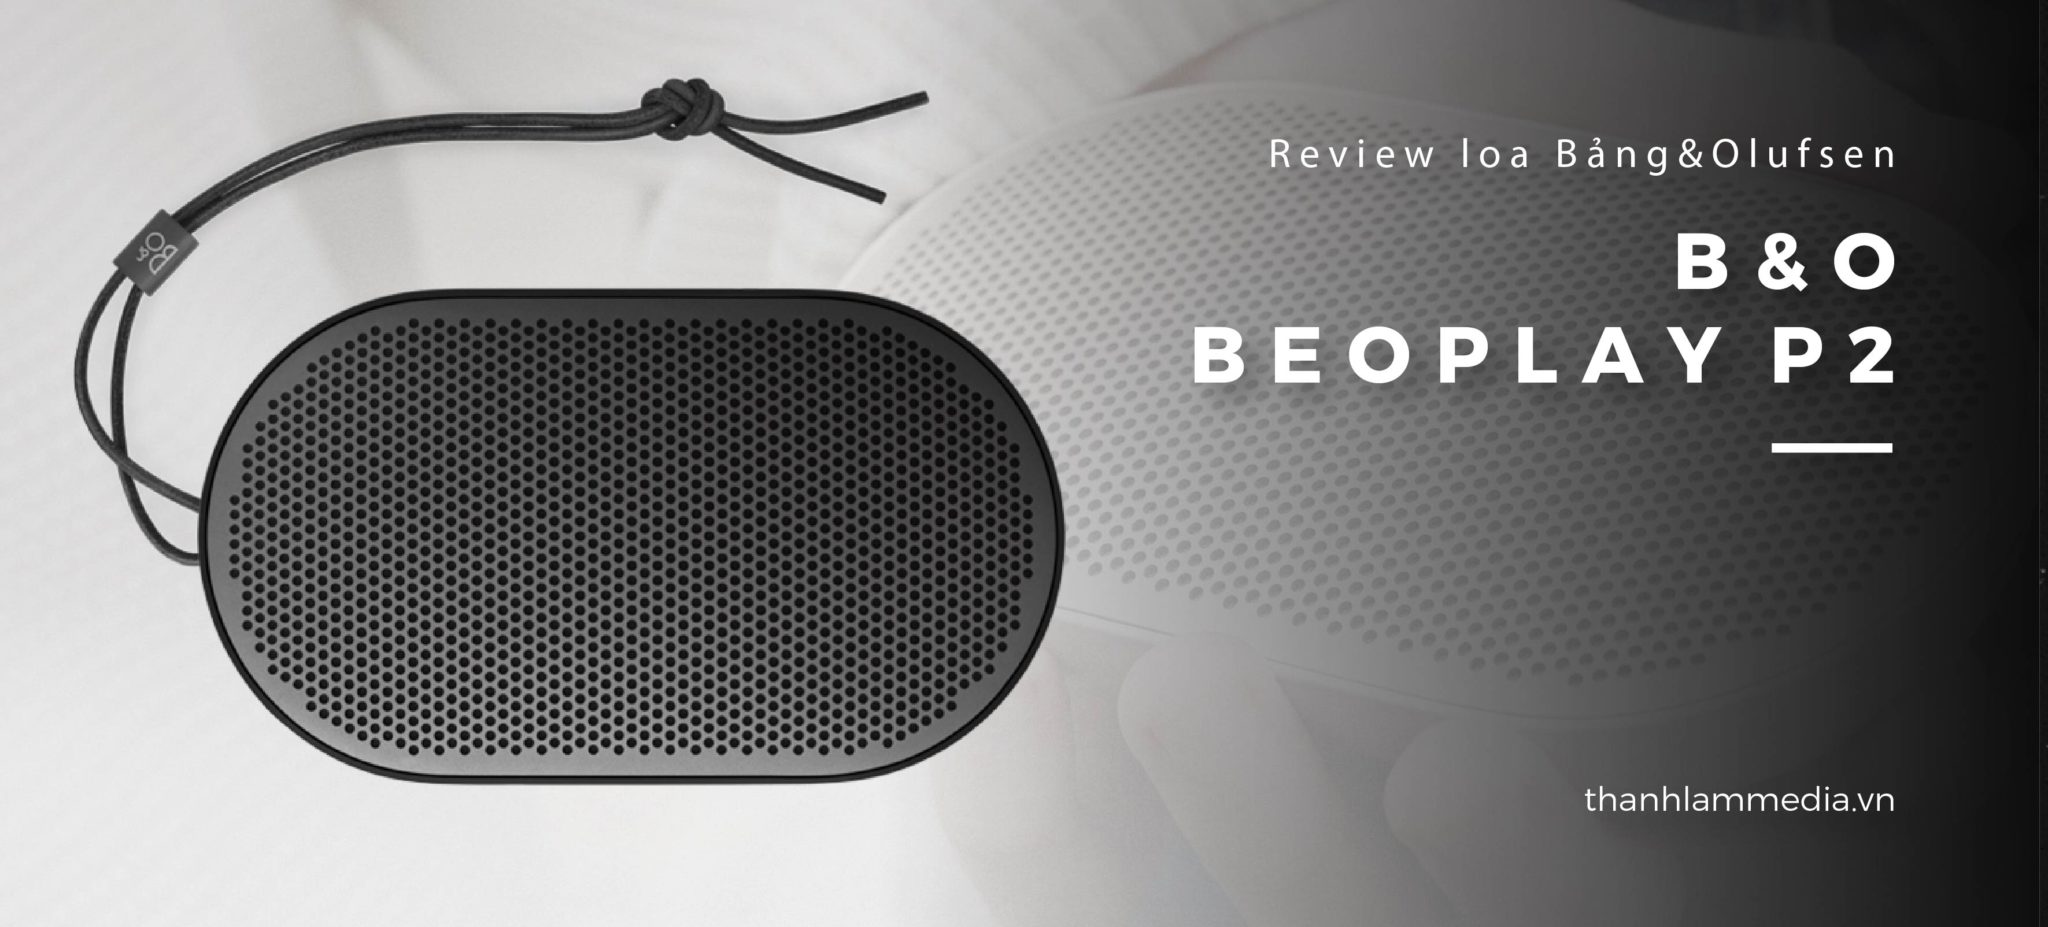 Loa B&O Beoplay P2: Thiết kế nhỏ gọn, âm thanh ấn tượng 27